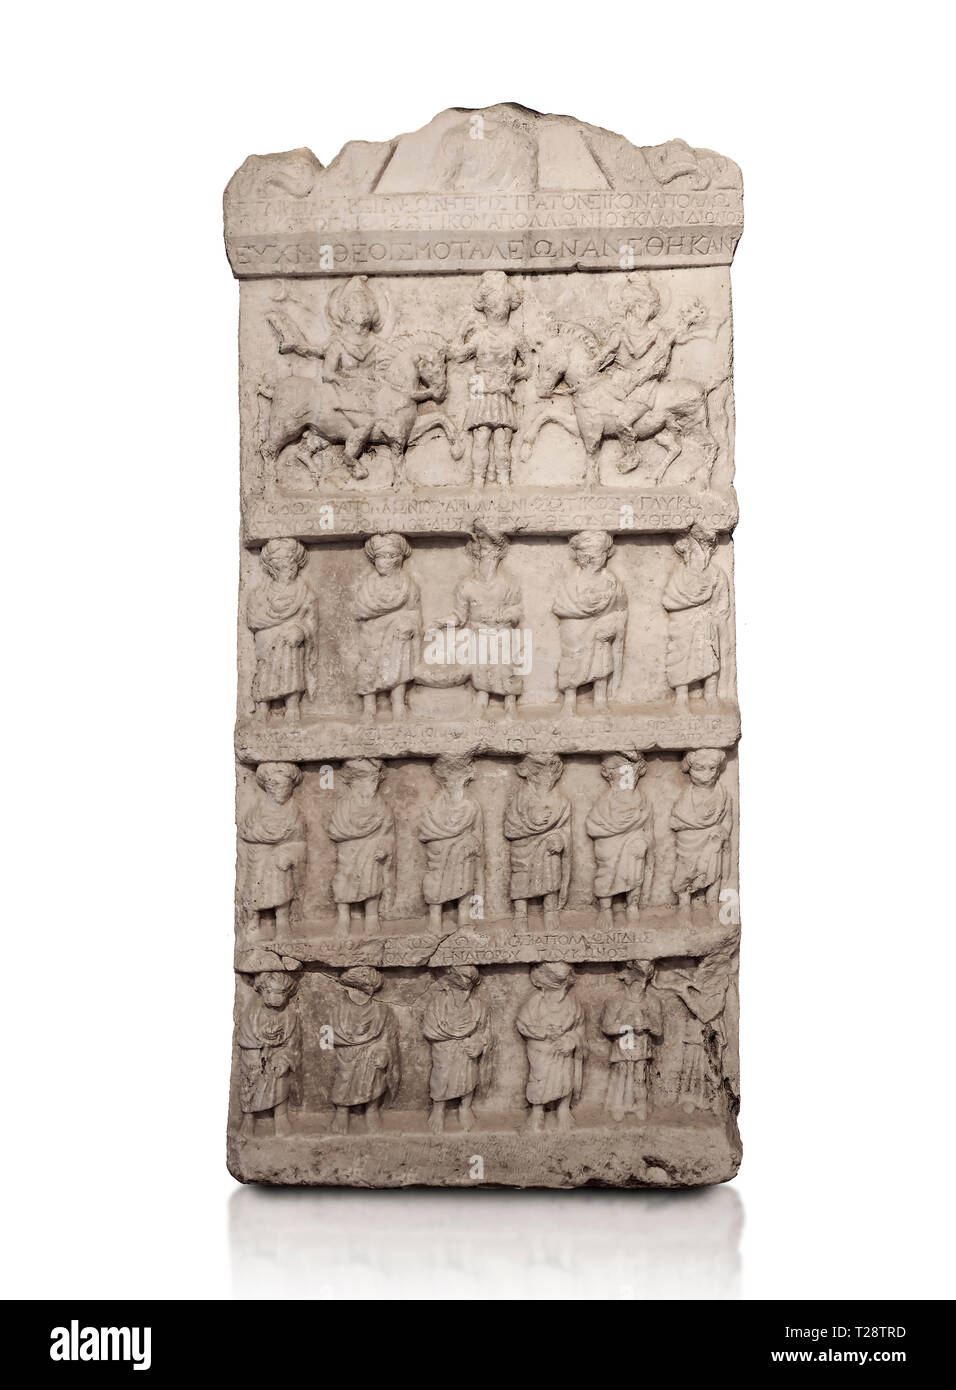 Stèle funéraire sculpture relief romain. Fin de la période romaine. Musée Archéologique de Hierapolis, la Turquie. Contre un fond blanc Banque D'Images